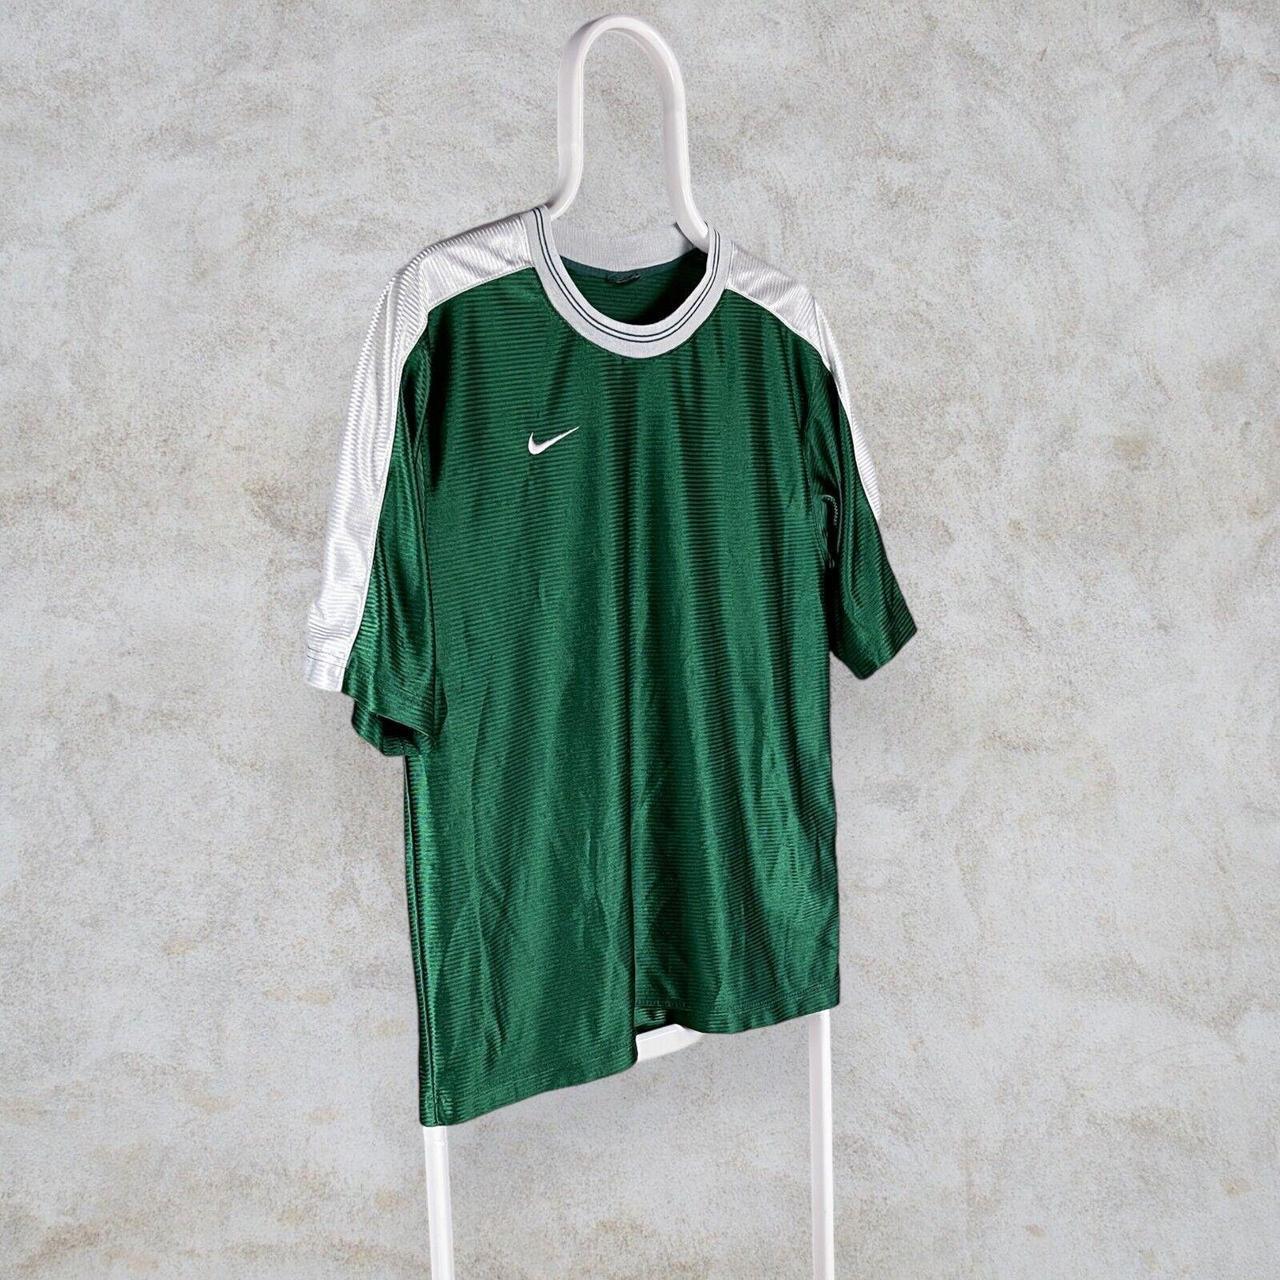 Vintage Green Nike T Shirt 90s 🏷 Size: - Fits... - Depop